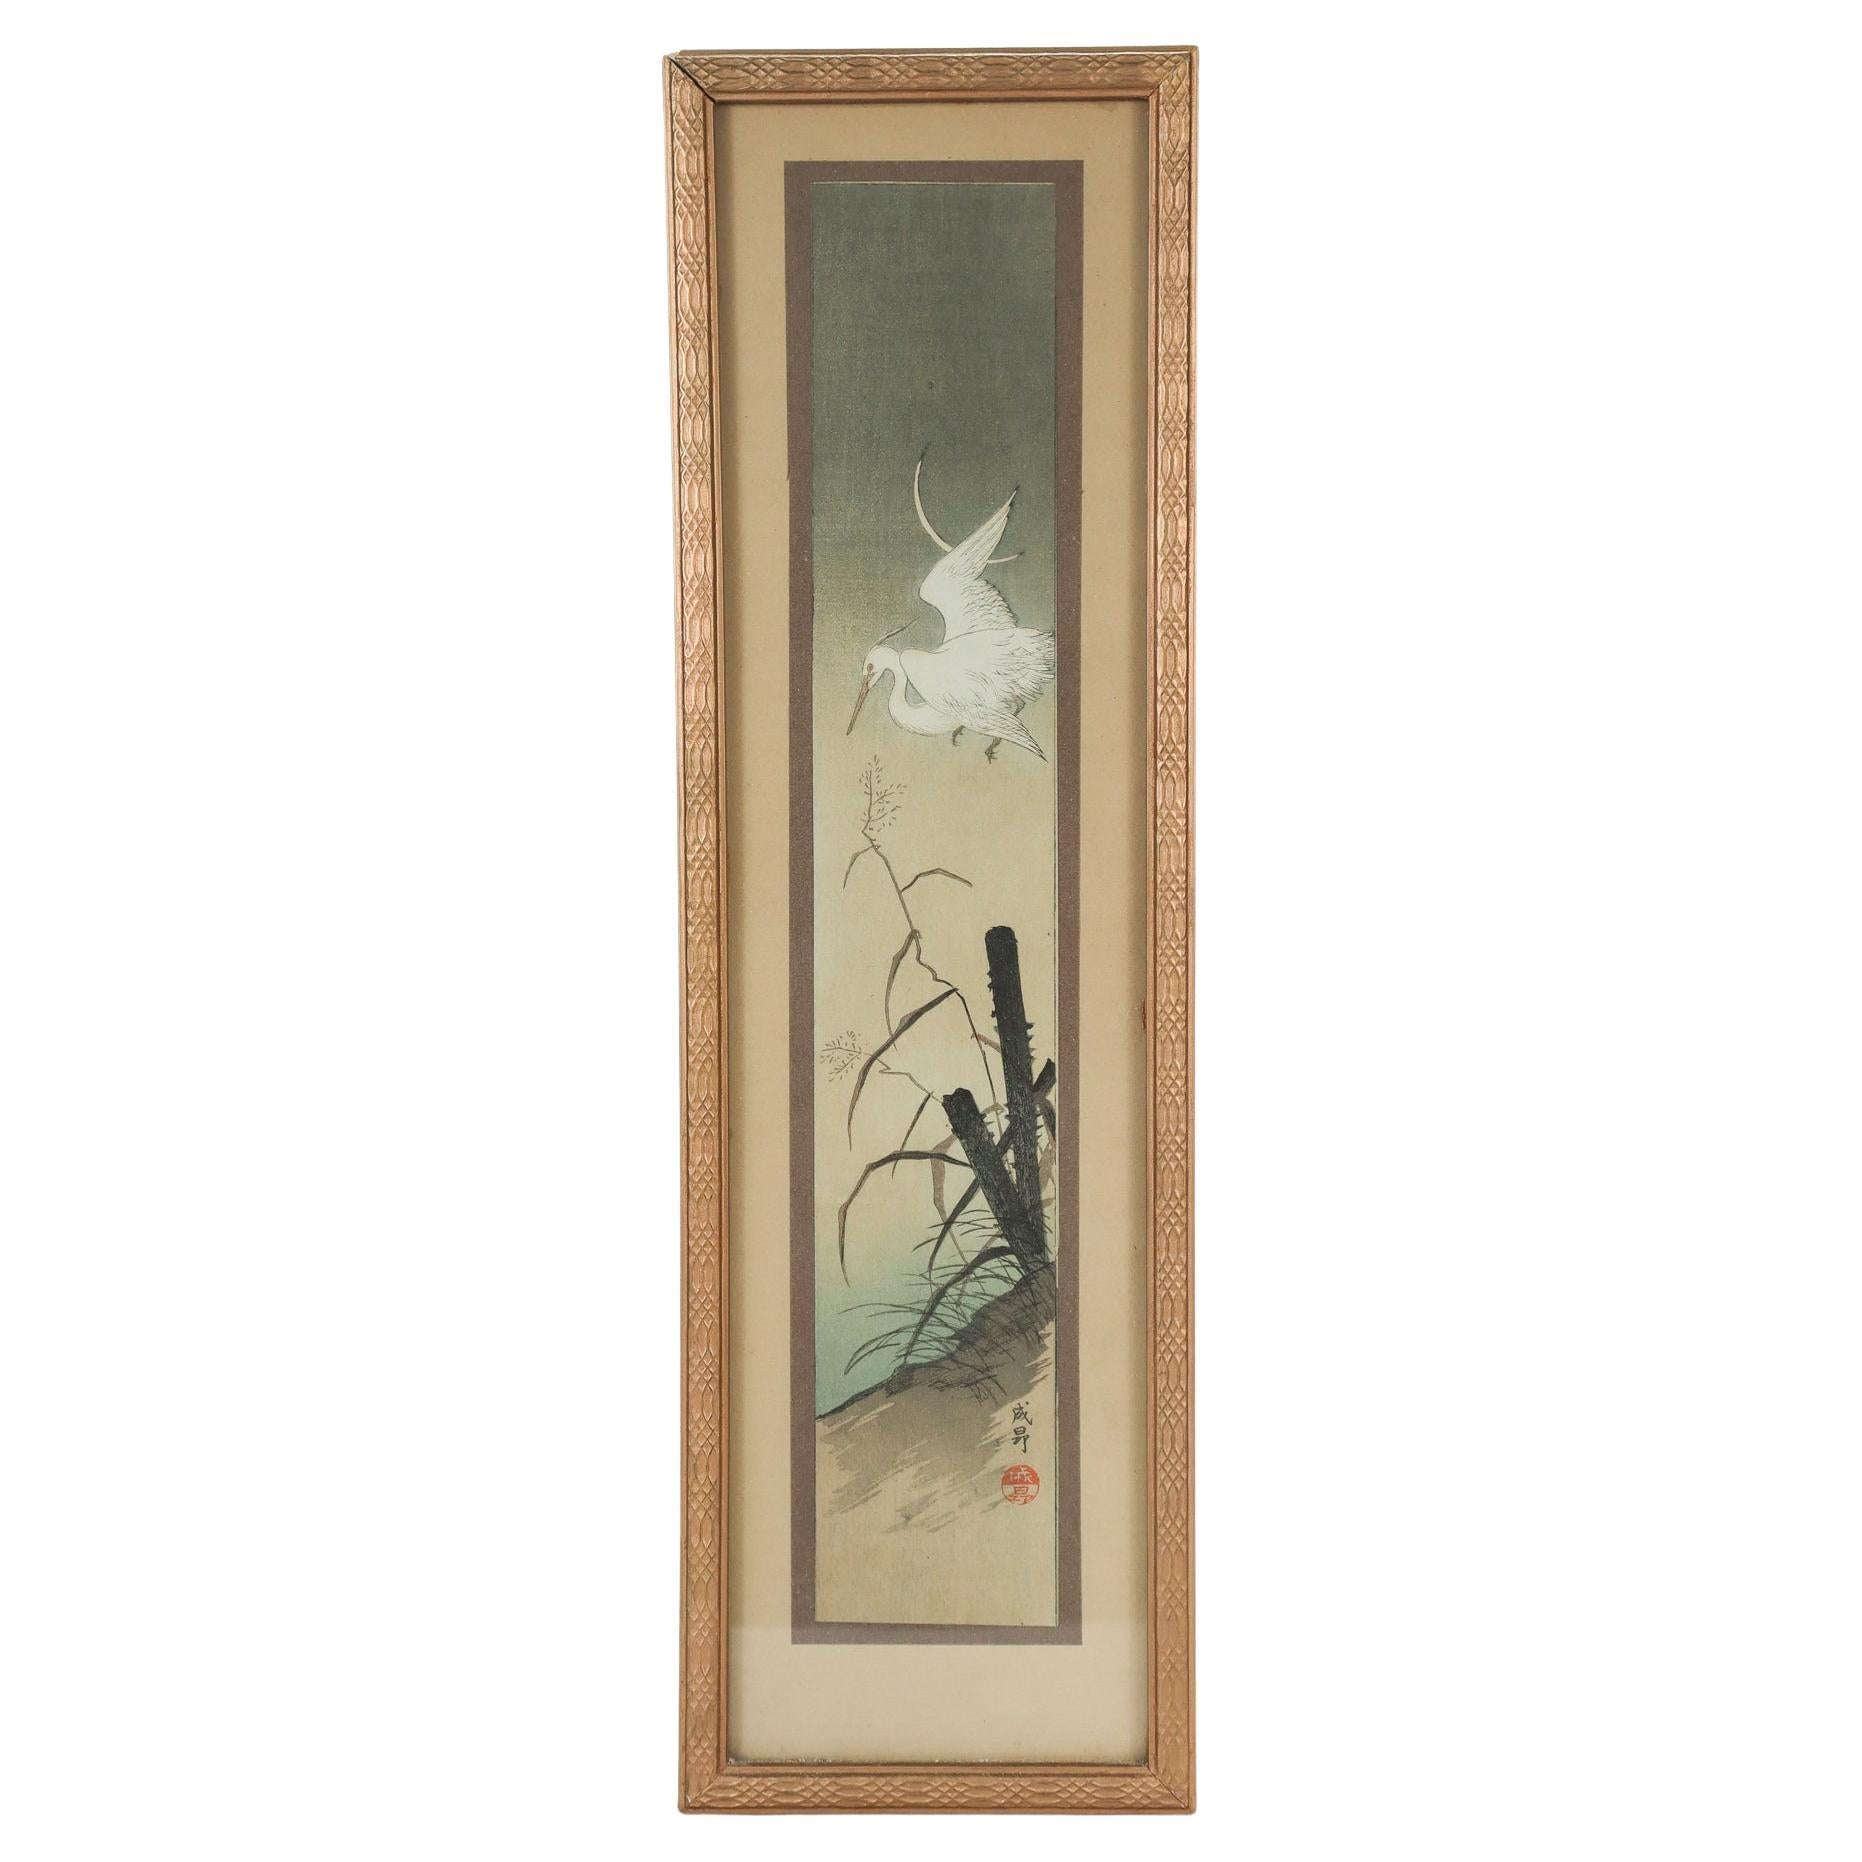 Ancienne gravure sur bois Tanzaku d'époque Taisho de la période Heron at Twilight par Seiko 